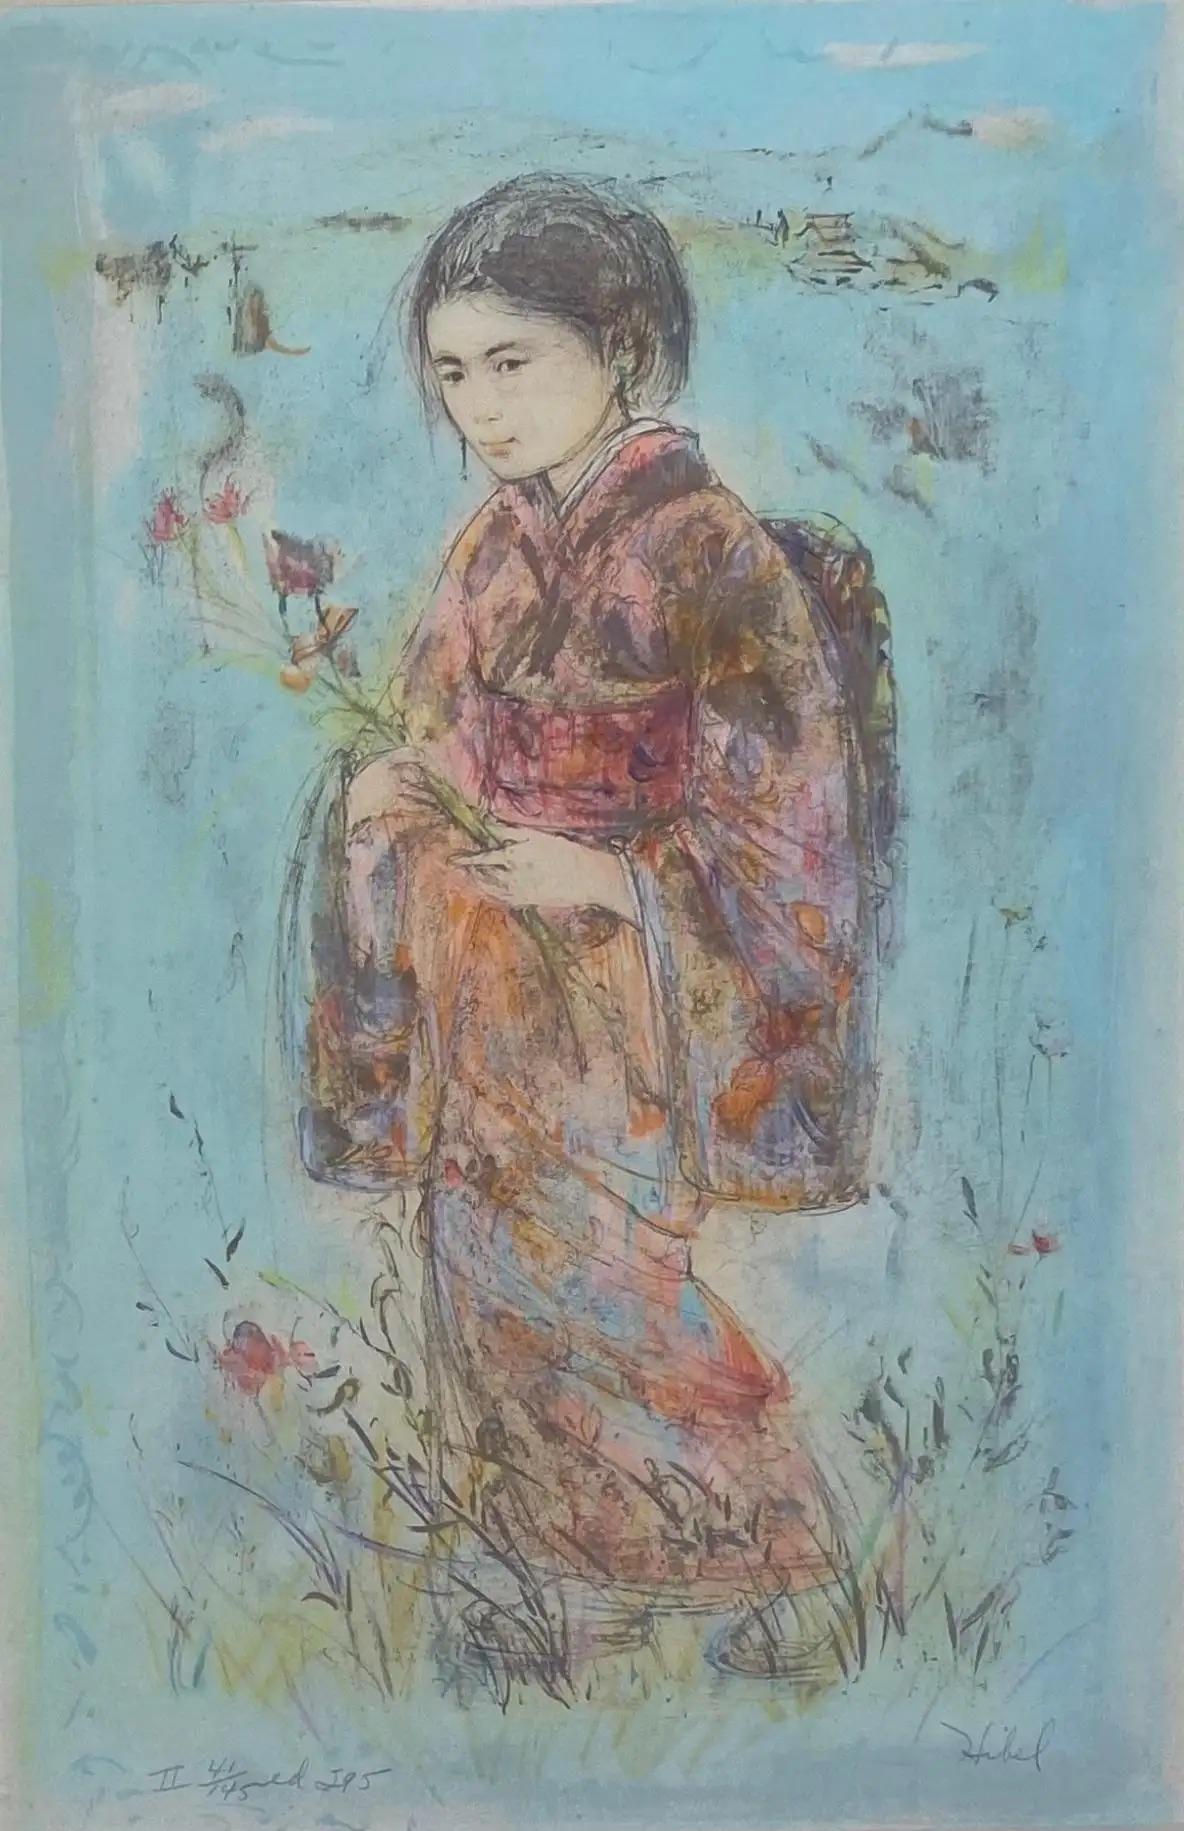 Una splendida opera d'arte decorativa di Edna Hibel con una giovane ragazza vestita con un kimono tradizionale giapponese.
 
Edna Hibel: 1917-2015. Importante artista americano ben quotato. Principalmente associato alla Florida e al Massachusetts.